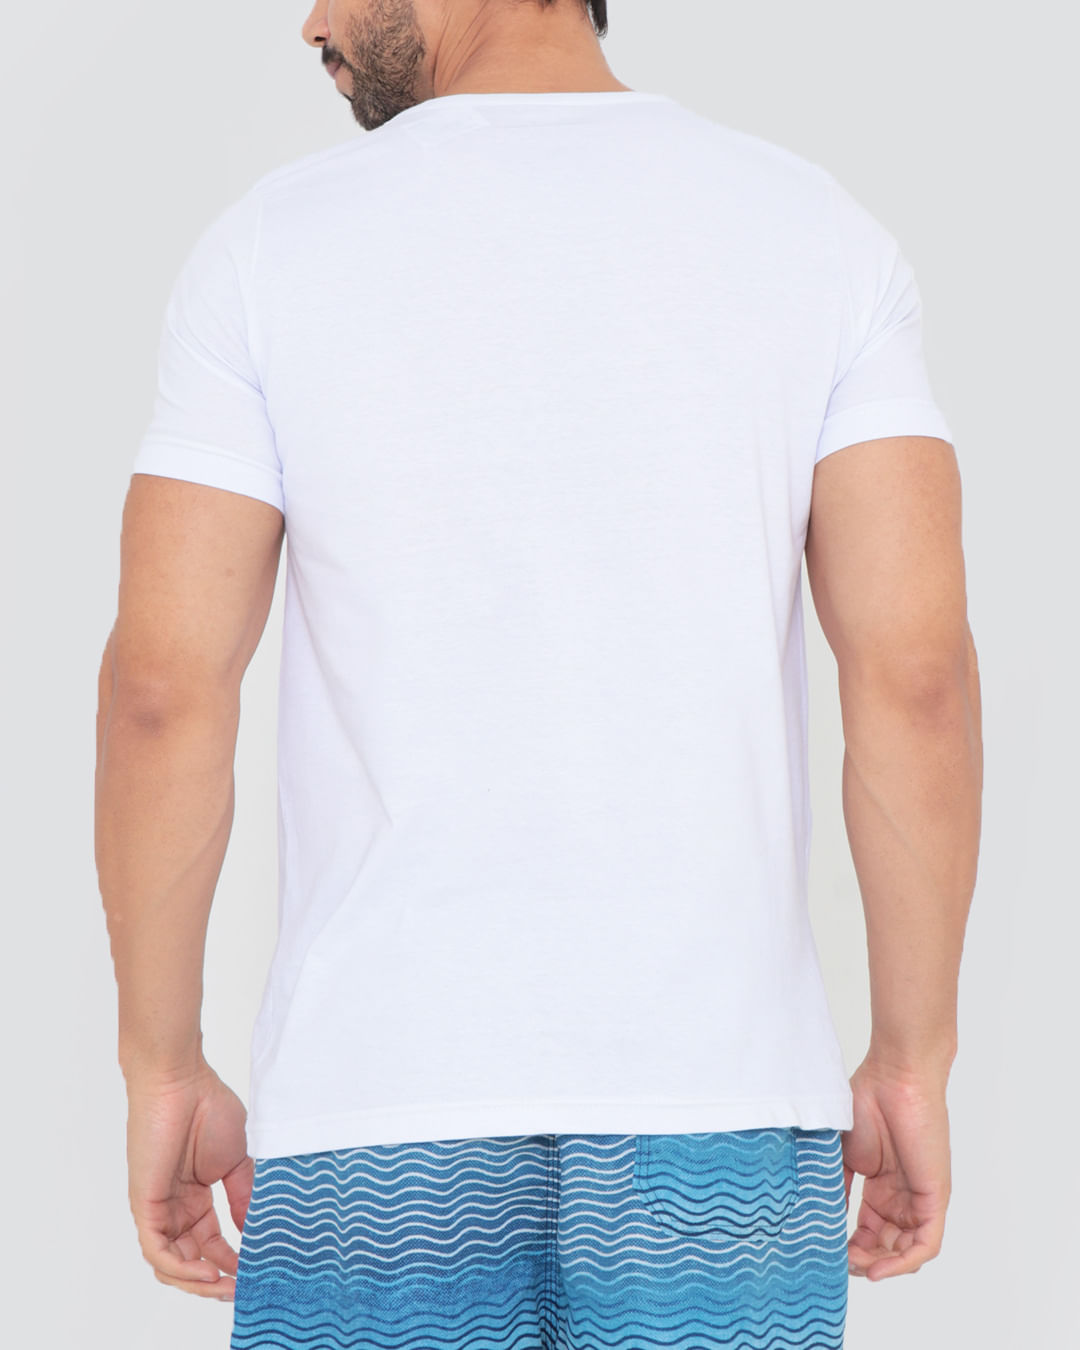 Camiseta-811s-Meia-Malha-Branco-Mesa---Branco-Outros